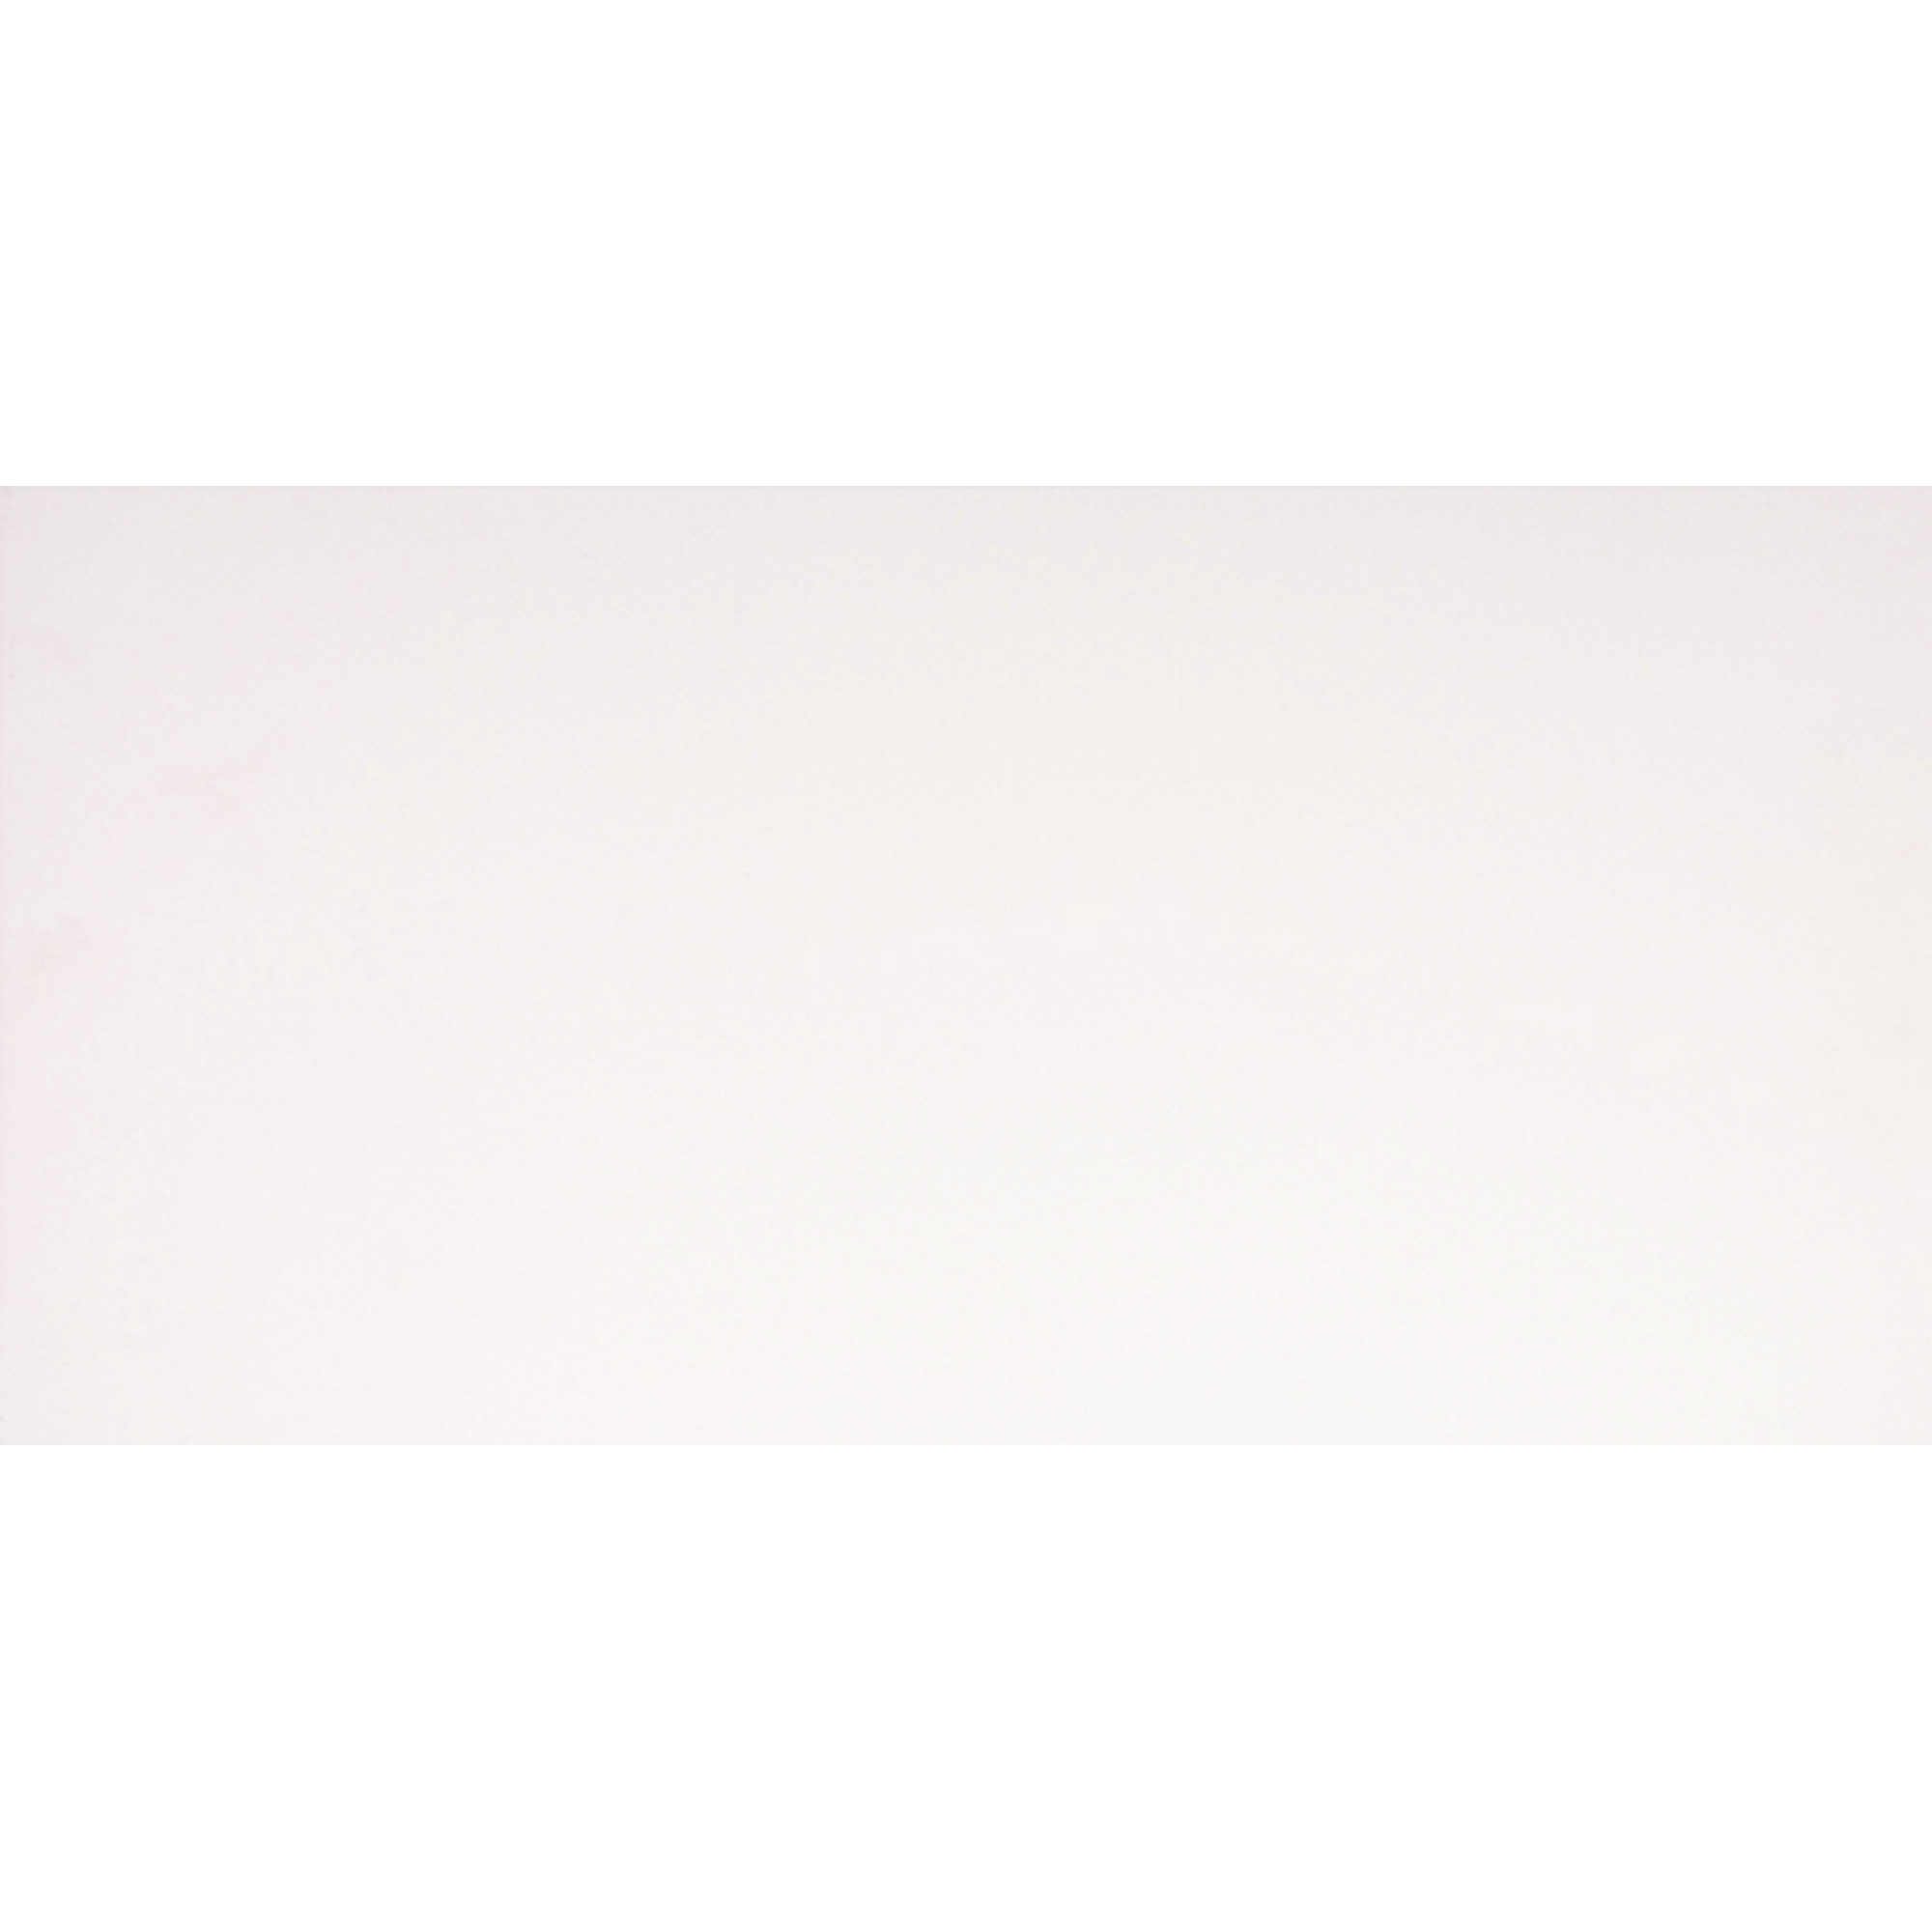 Wandfliese 'Bianca' Steingut weiß glänzend rektifiziert 29,8 x 59,8 cm + product picture